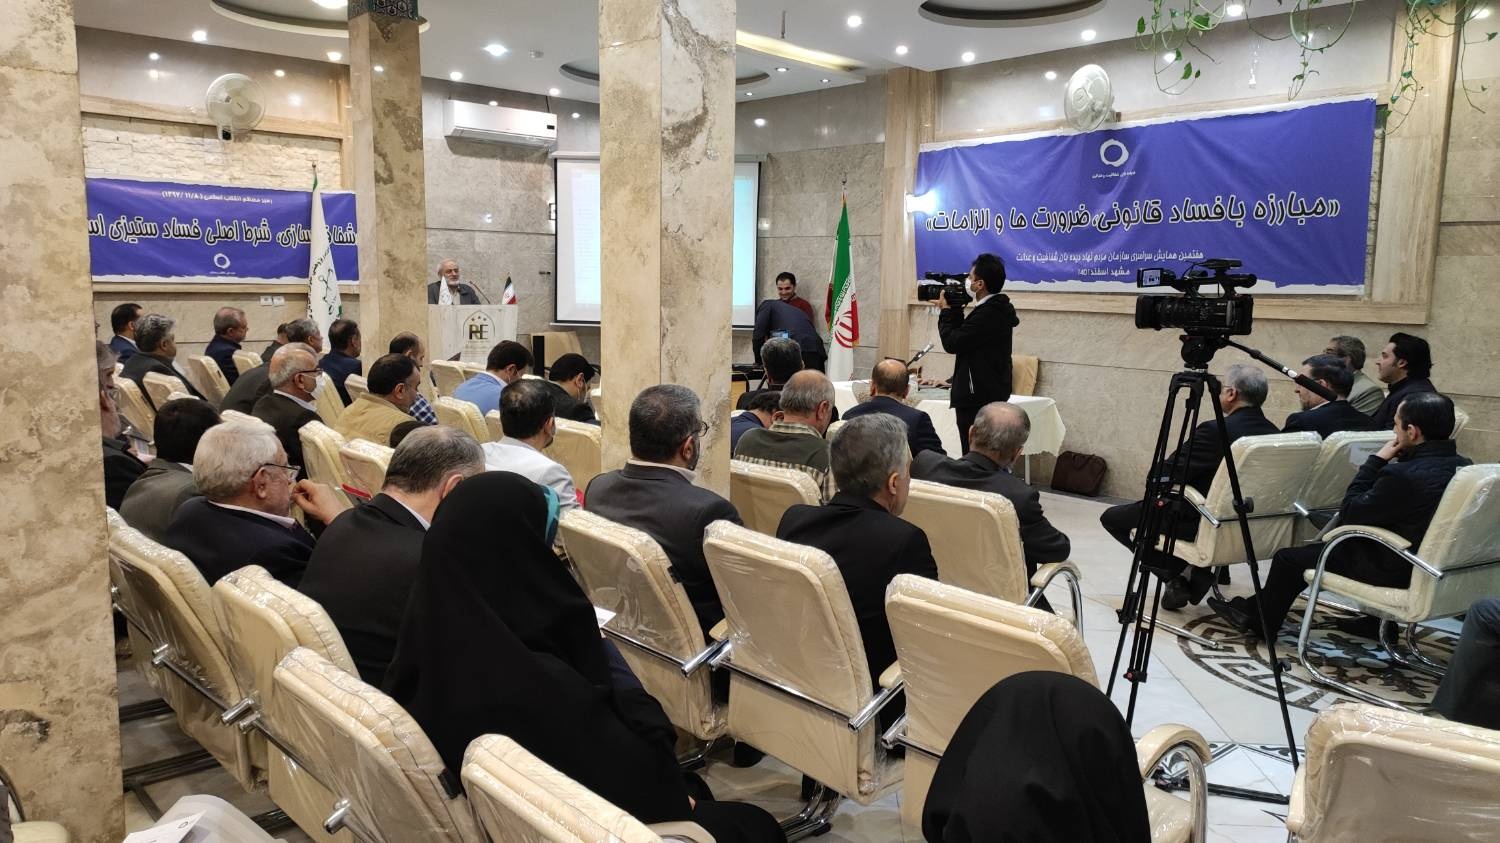 برگزاری همایش سراسری دیده بان شفافیت و عدالت در مشهد/ حضور فعال دیده بان کردستان در همایش